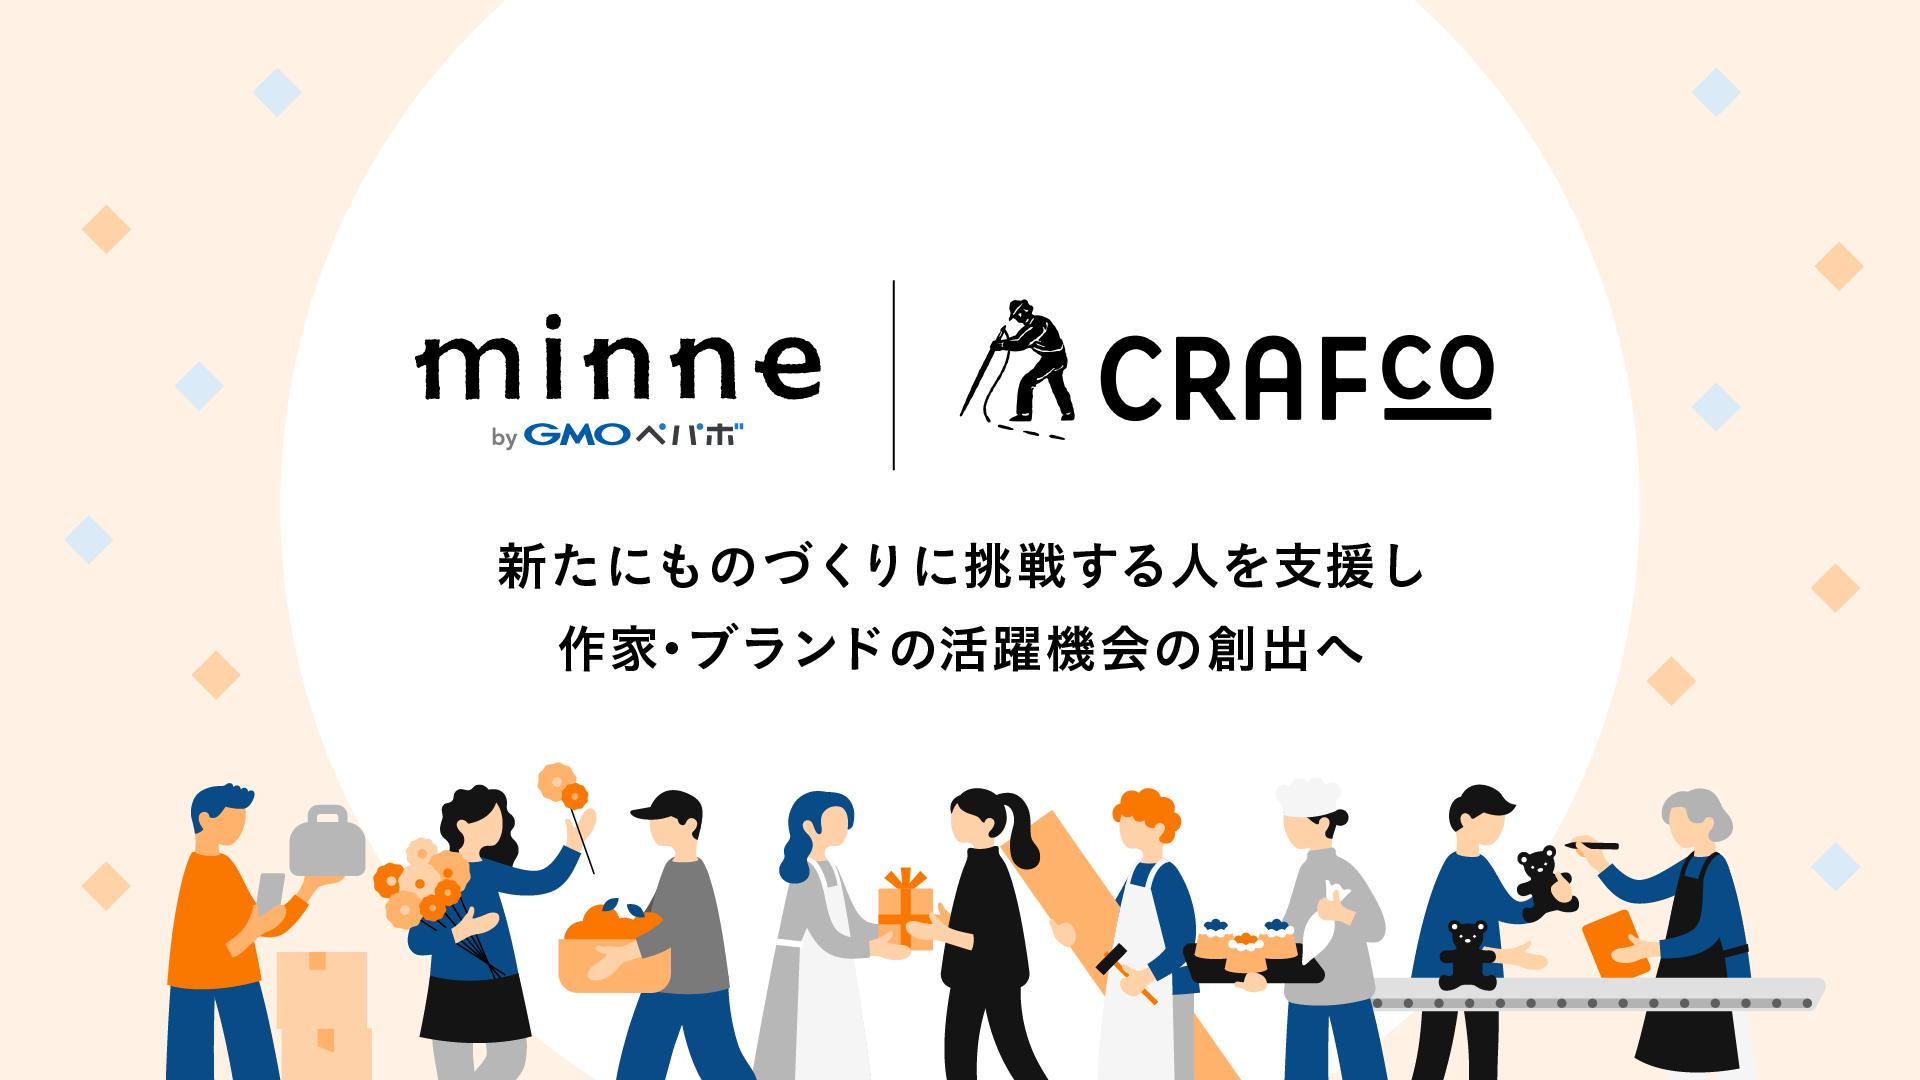 コミュニティスペース「Crafco」を運営するSTORY&Co.と「minne byGMOペパボ」を運営するGMOペパボが連携